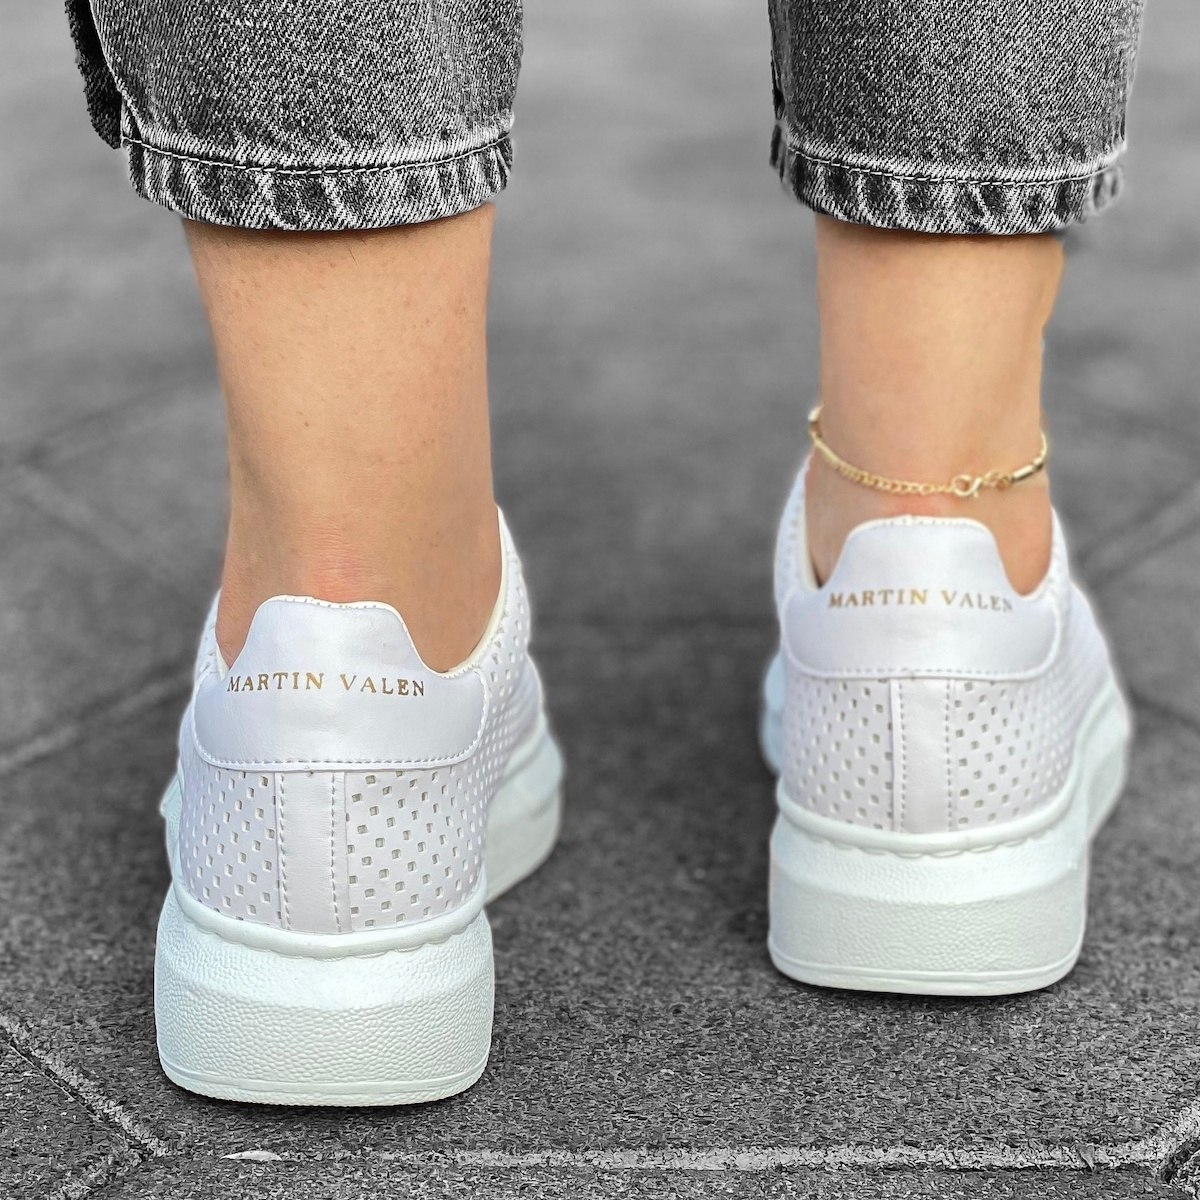 Martin Valen Women’s Chunky Side-Mesh Sneakers in White | Martin Valen